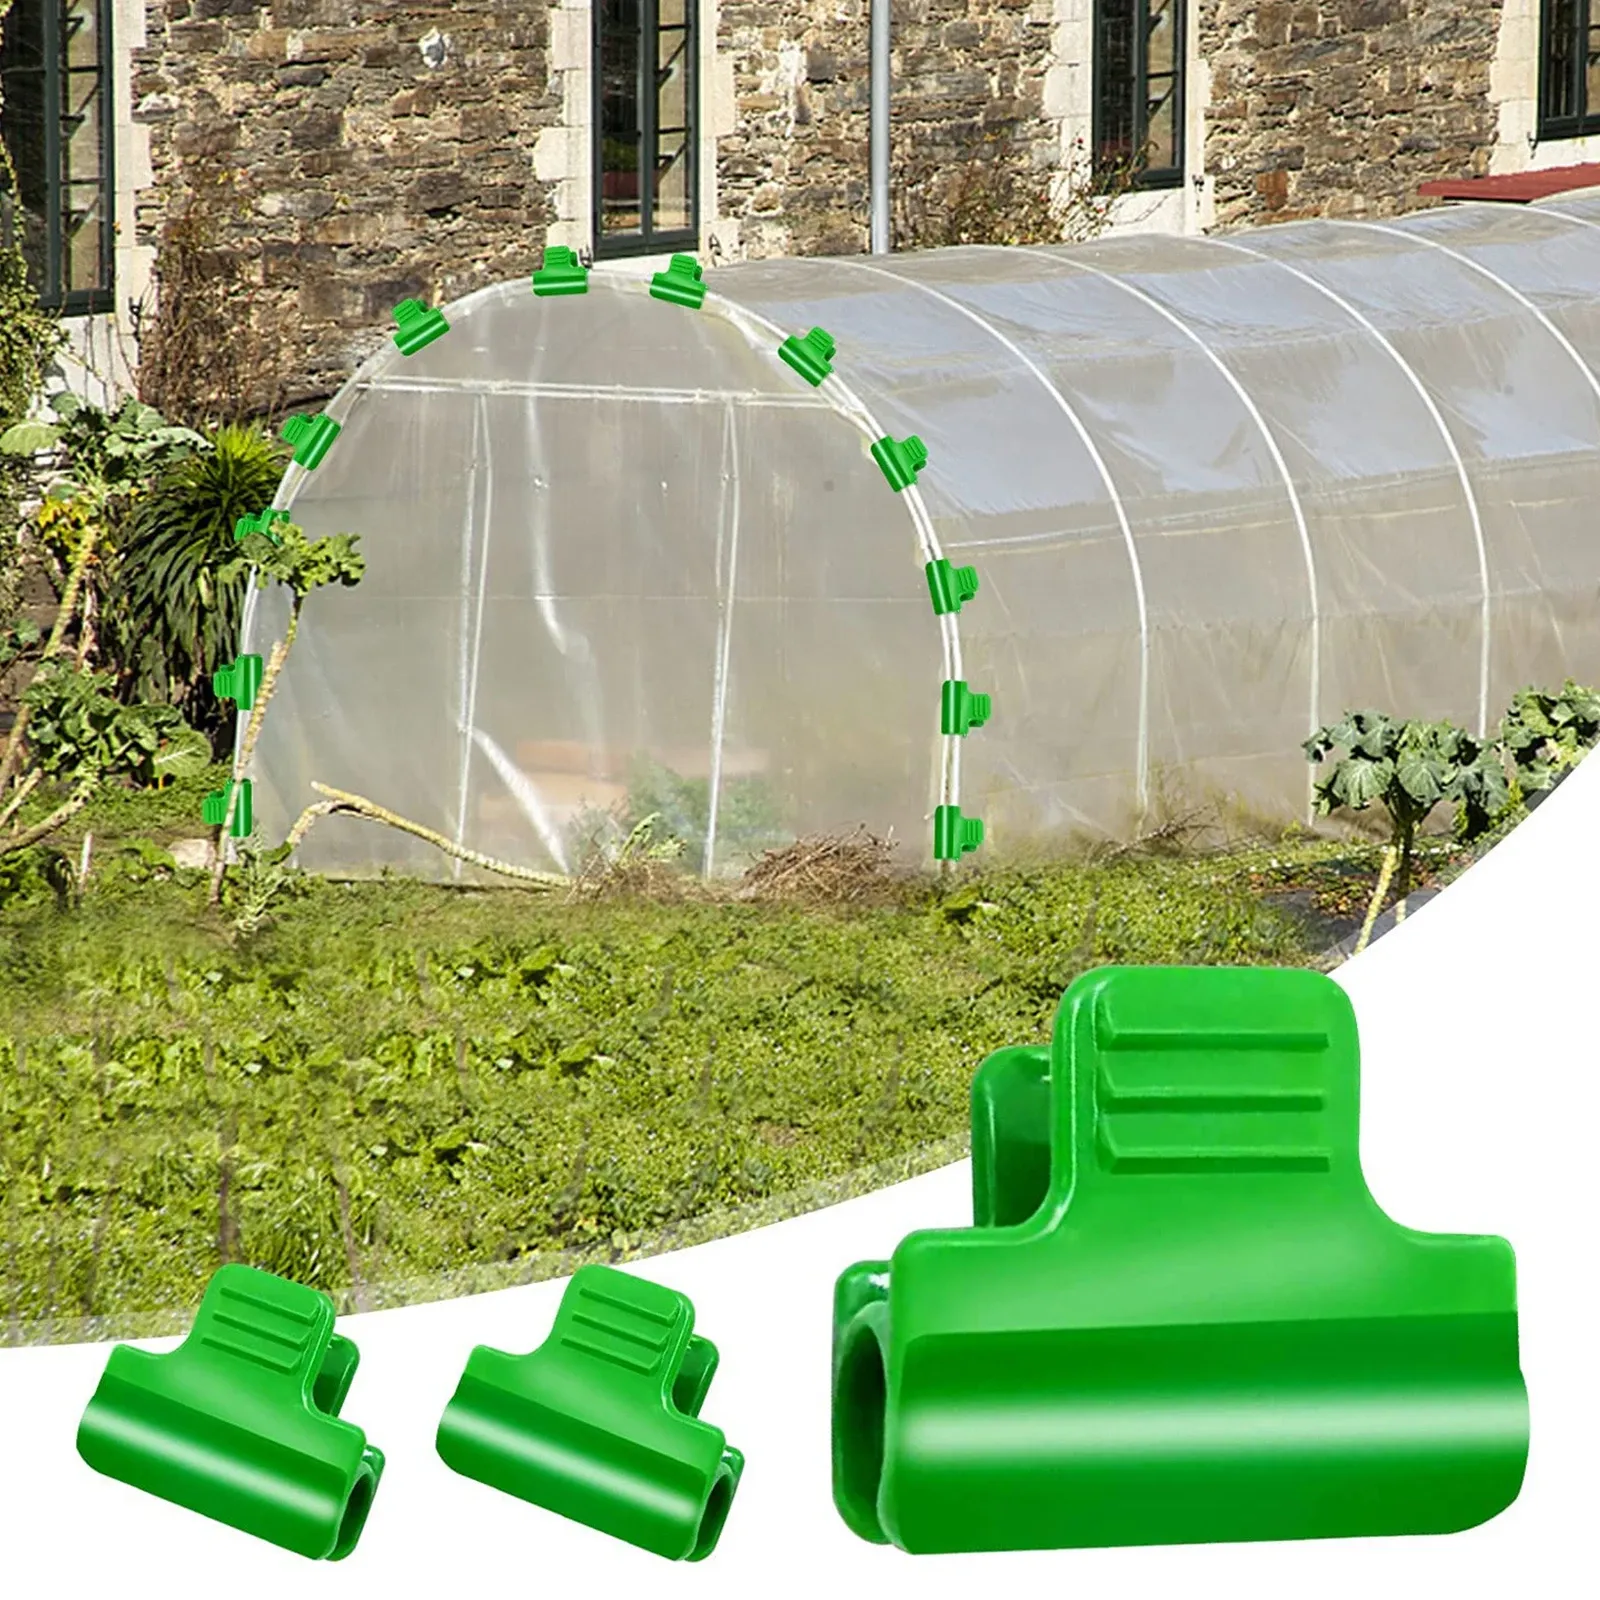 Ondersteunt 60 -stcs kas filmklemmen tuinschuur rijkleining netten tunnel hoepel plastic clips voor buiten diameter 11 cm plant stakes